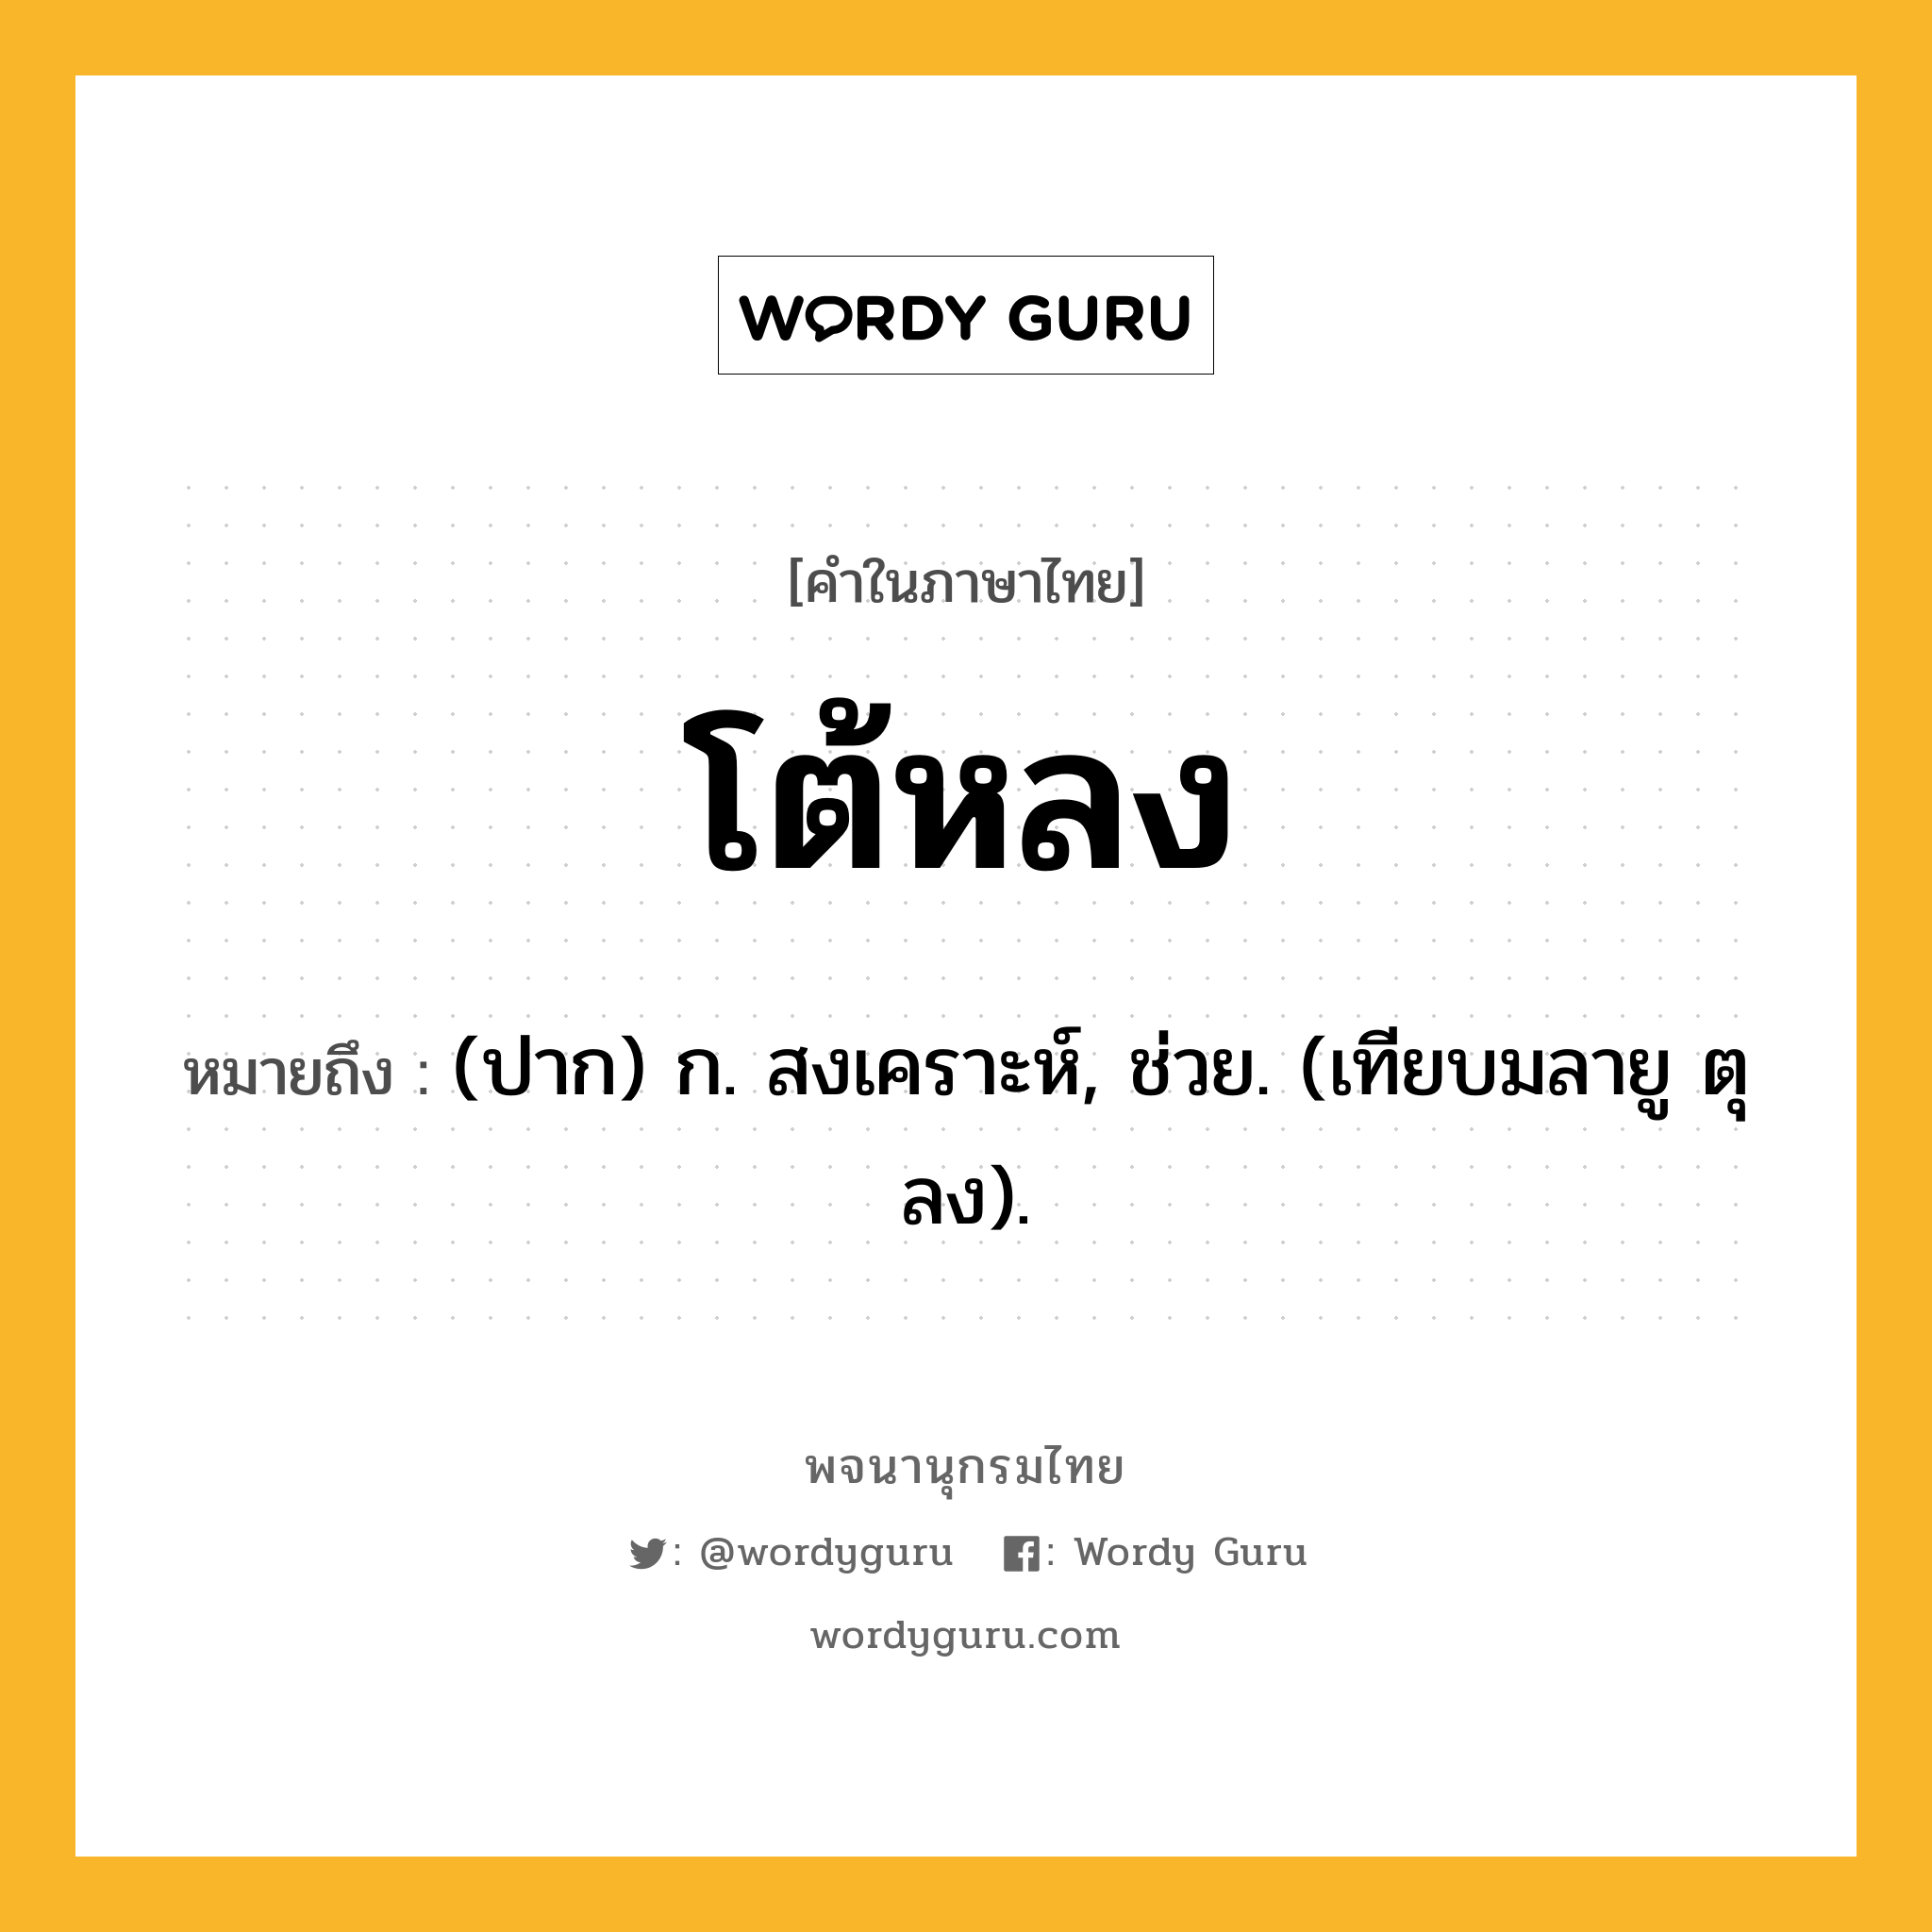 โต้หลง หมายถึงอะไร?, คำในภาษาไทย โต้หลง หมายถึง (ปาก) ก. สงเคราะห์, ช่วย. (เทียบมลายู ตุลง).